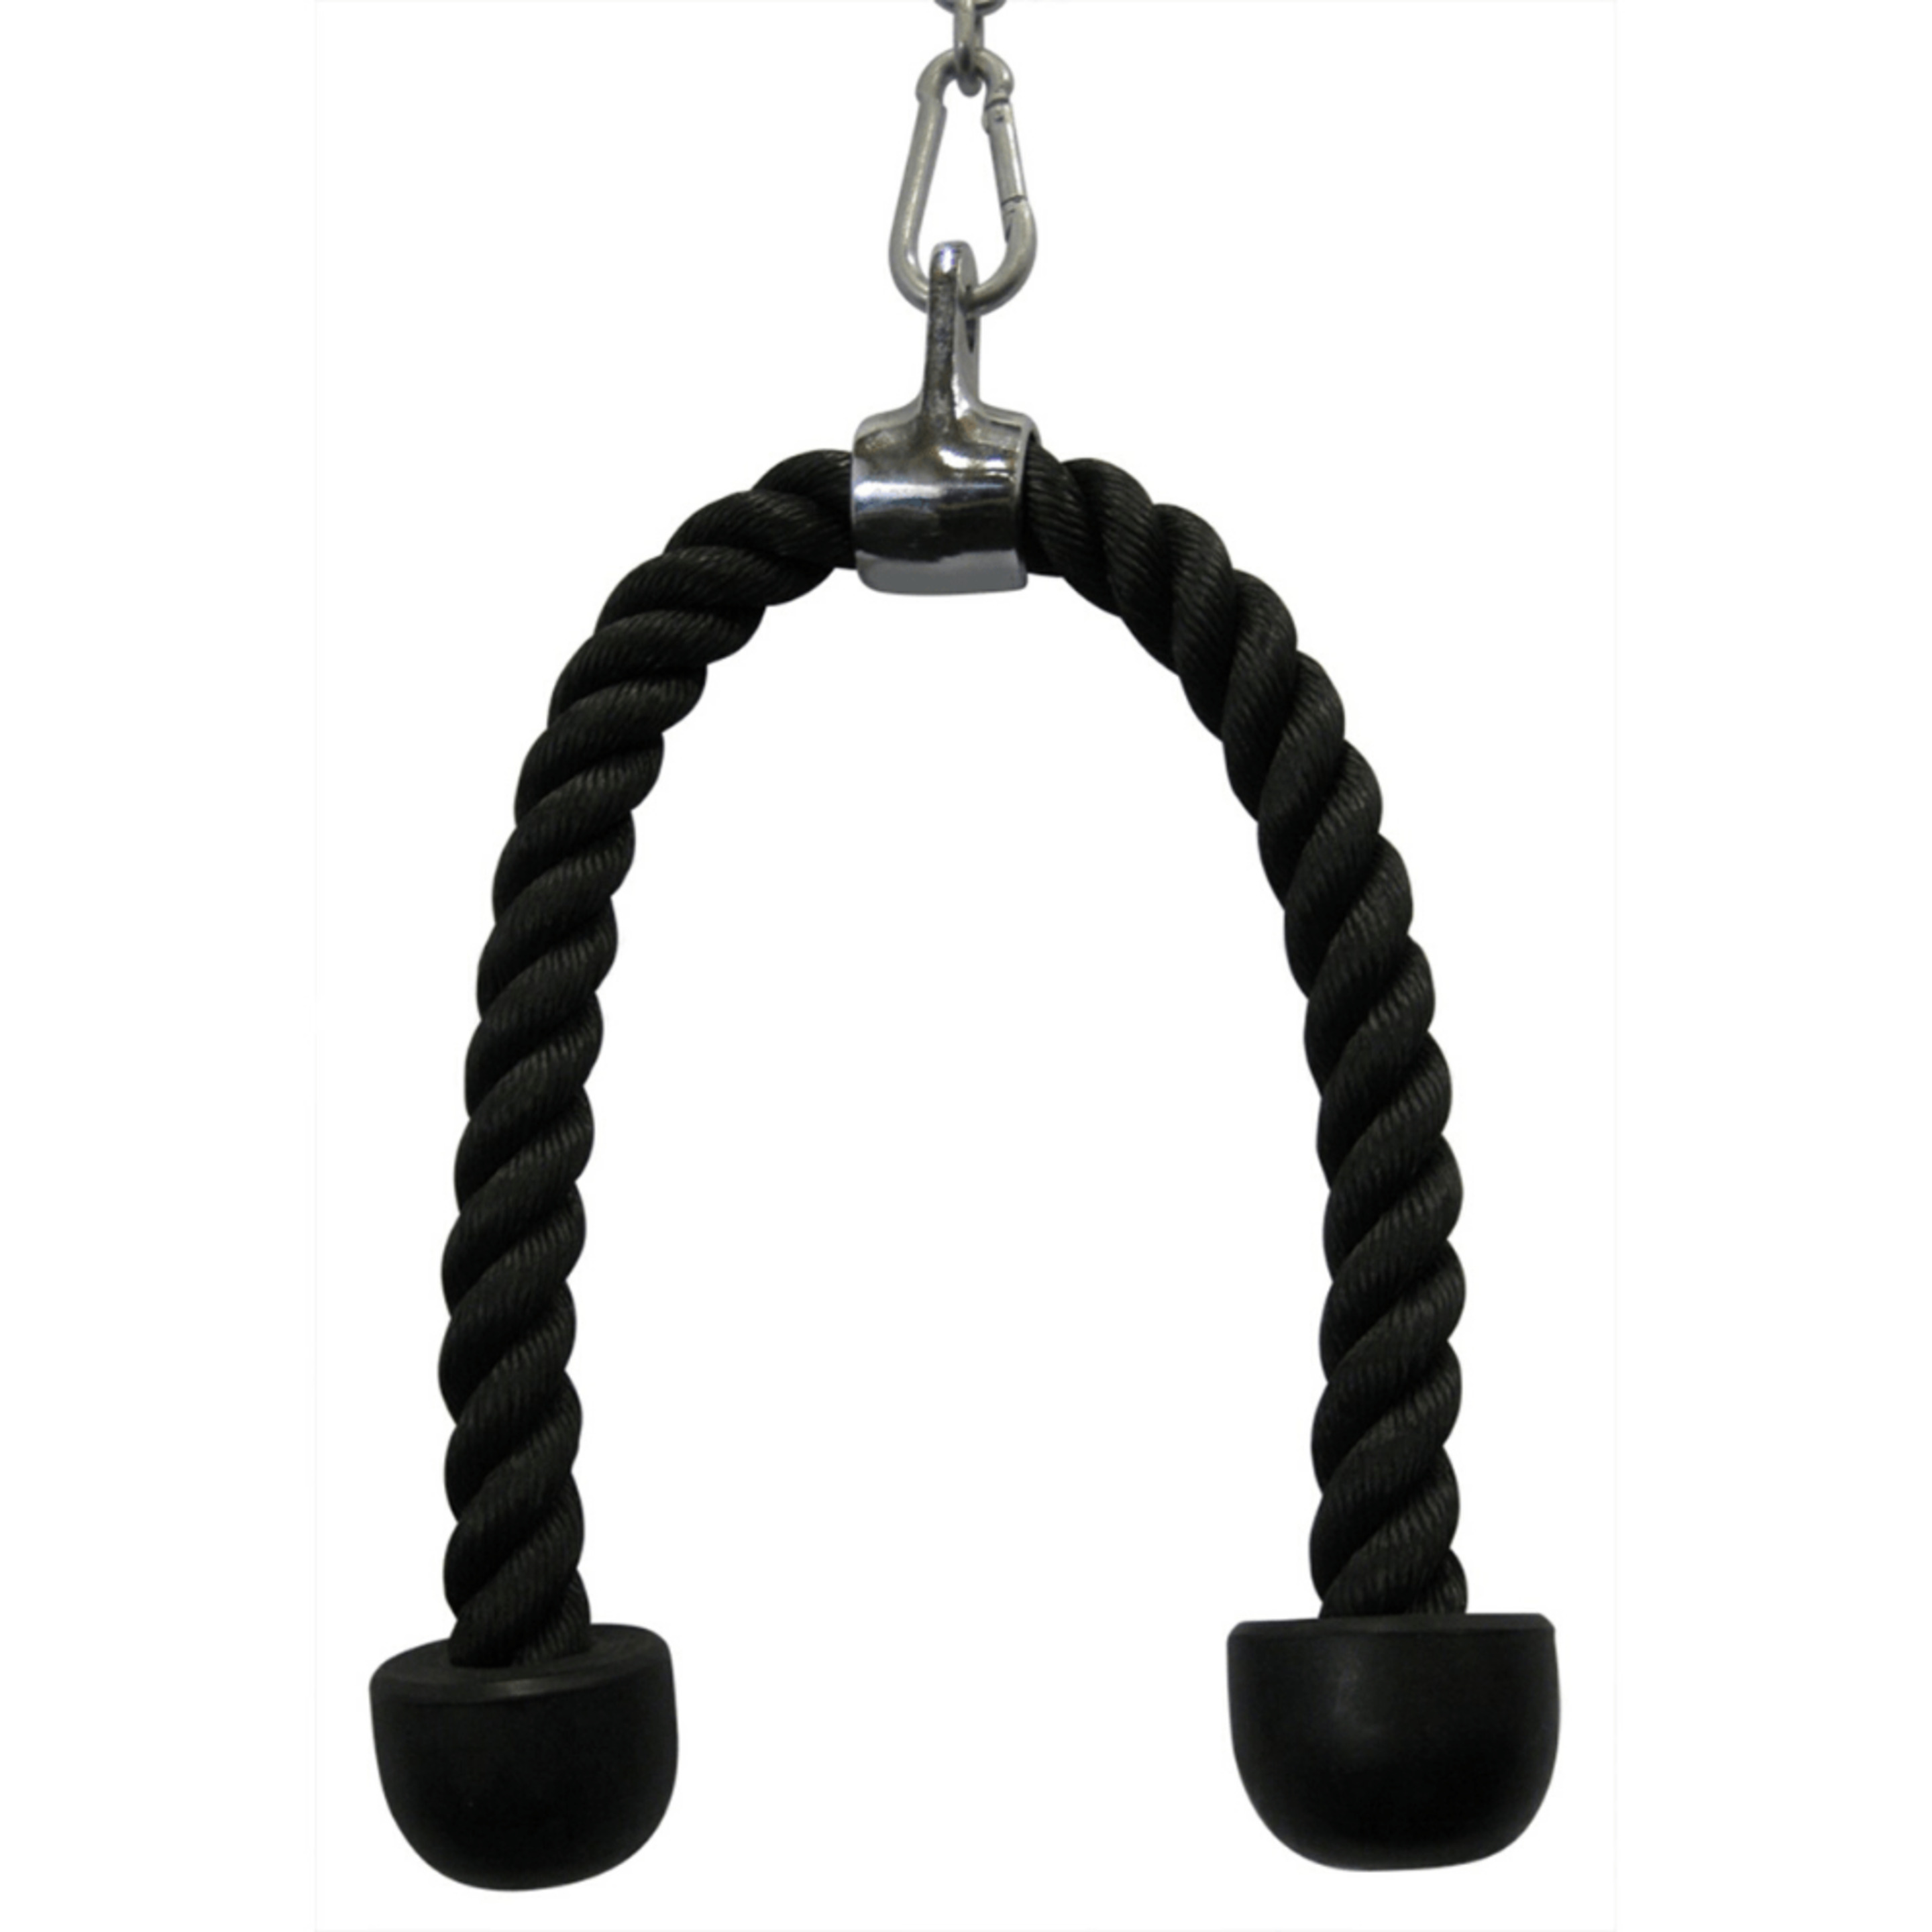 Cuerda Trícep / Bícep - Fittest Equipment - negro - 